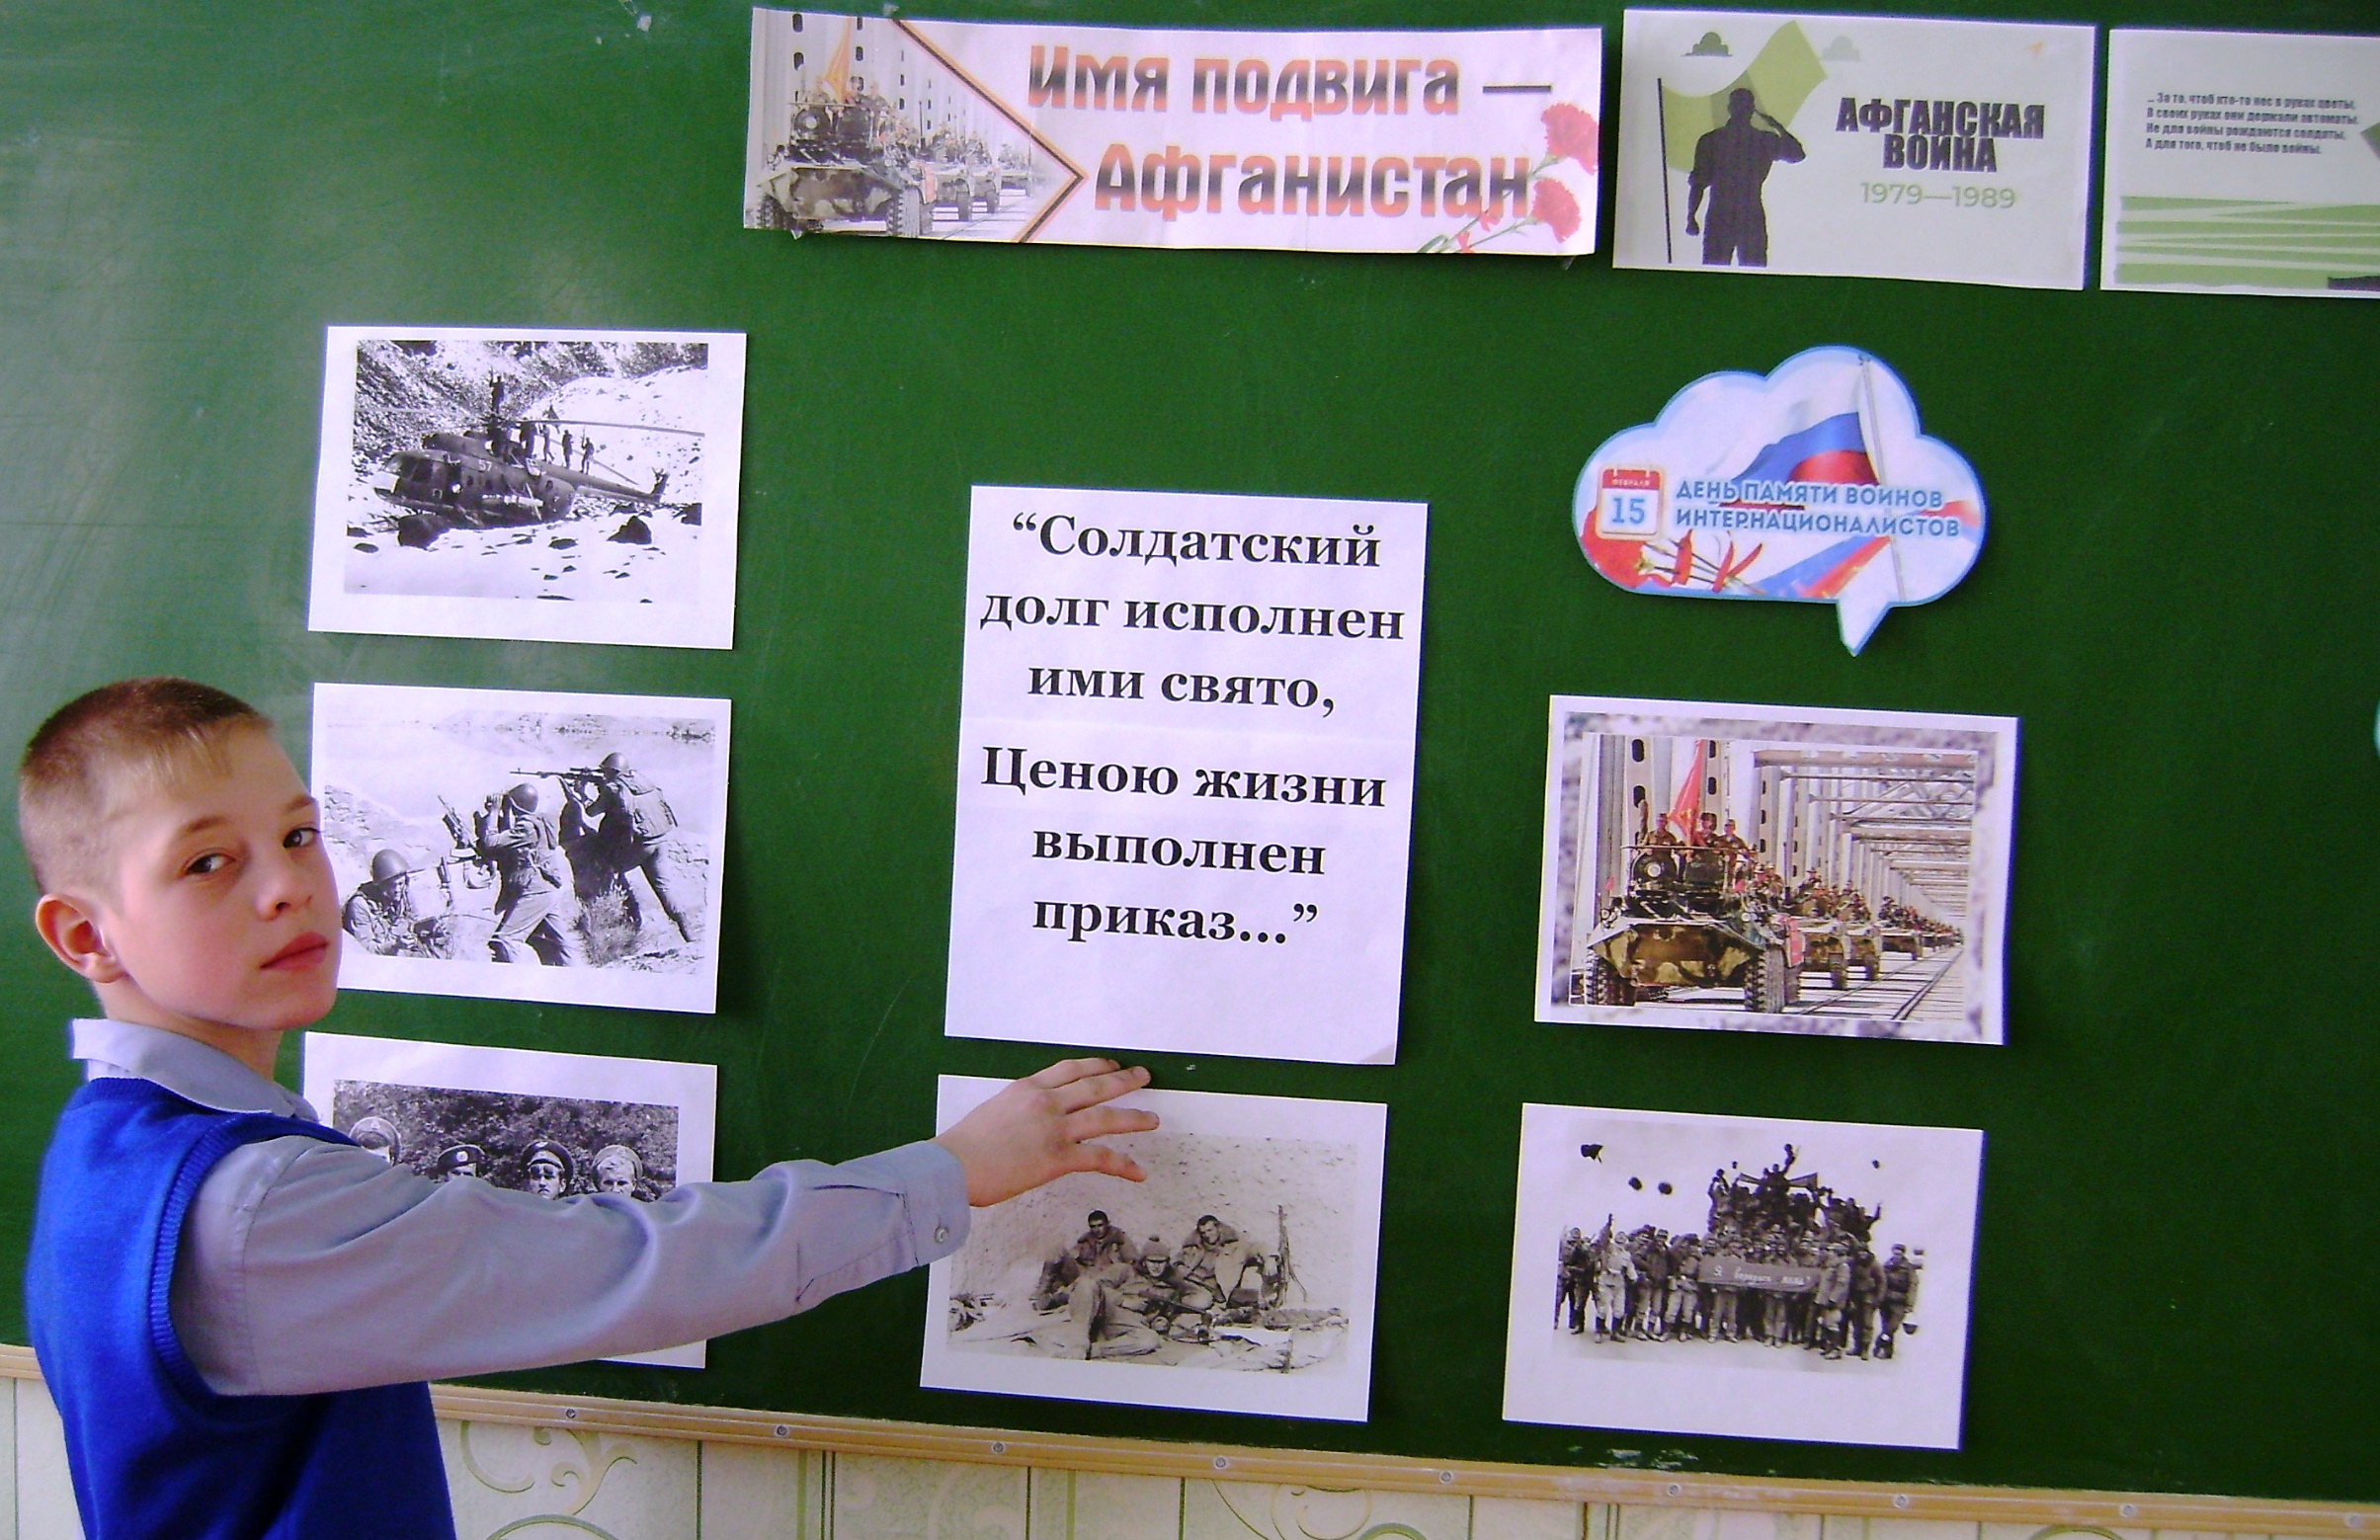 День памяти о россиянах, исполнивших служебный долг за пределами Отечества.